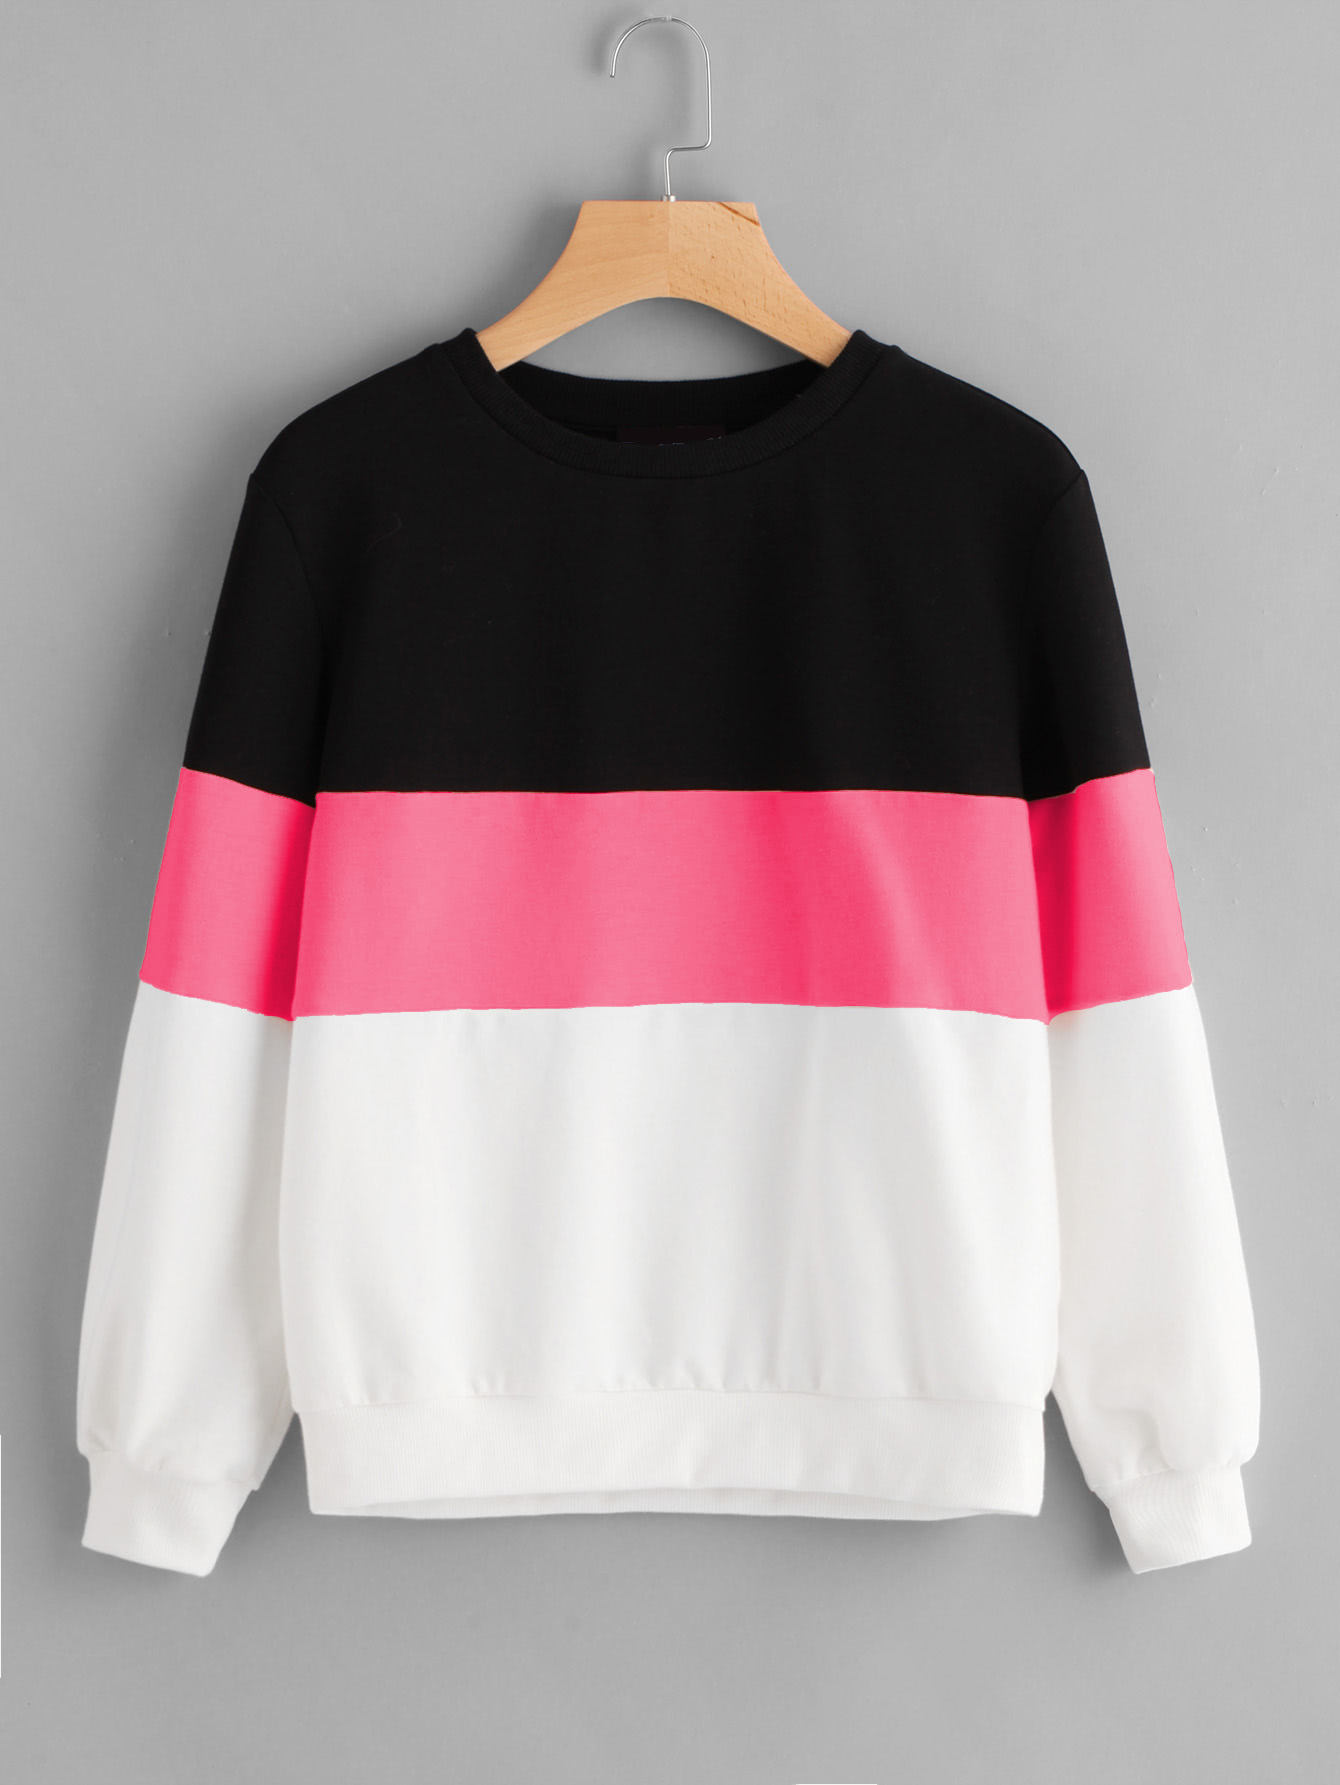 Buy Color Block Sweatshirt Online @ ₹999 from ShopClues